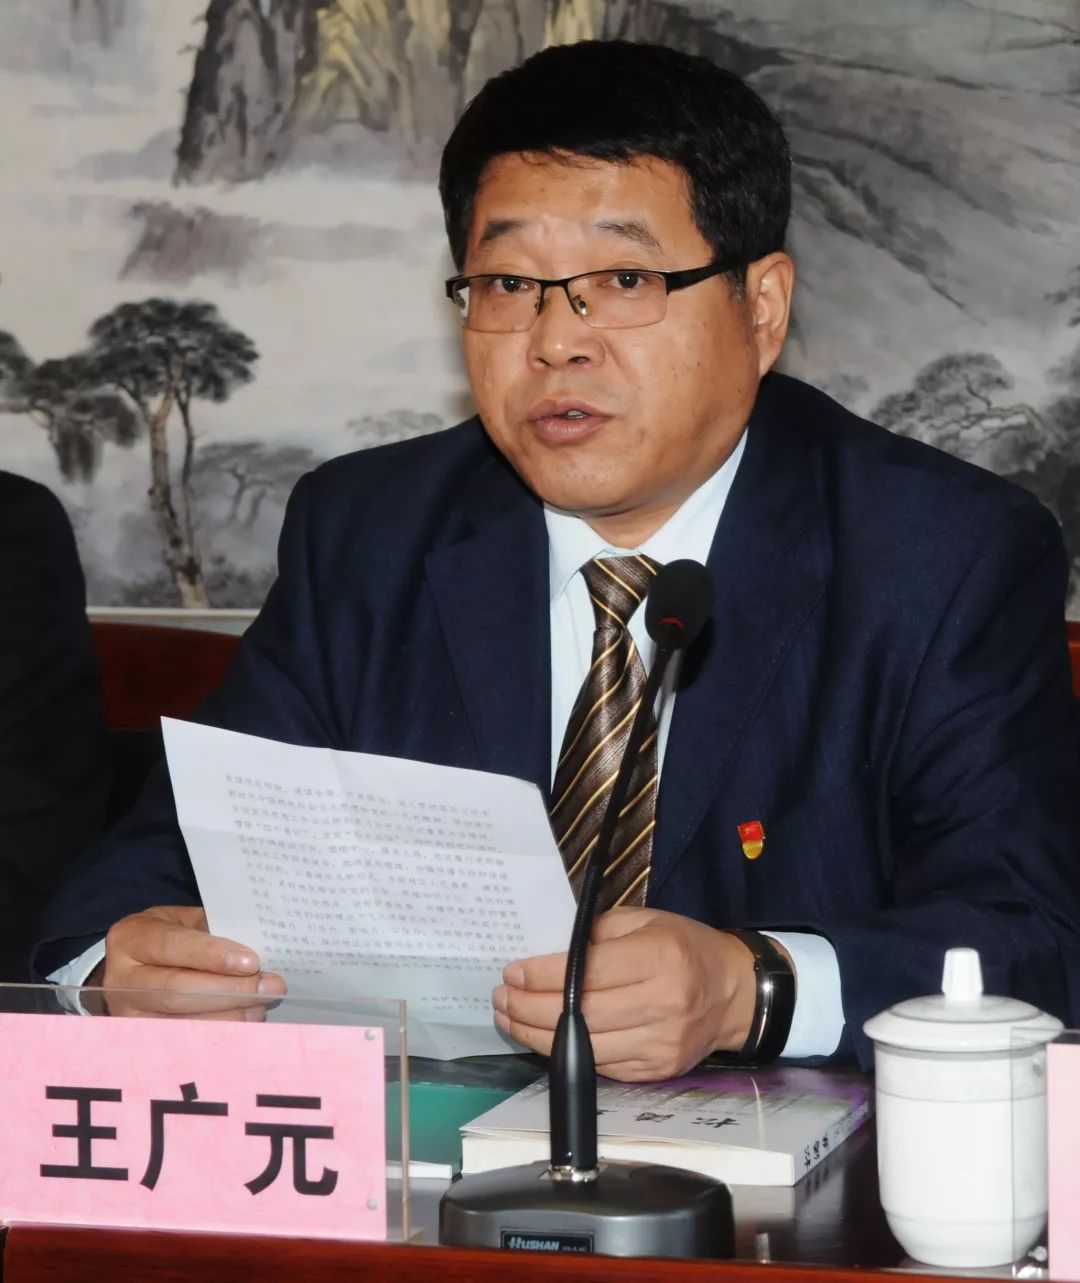 市委宣传部副部长王广元在会上致辞,他代表中共伊春市委宣传部向伊春